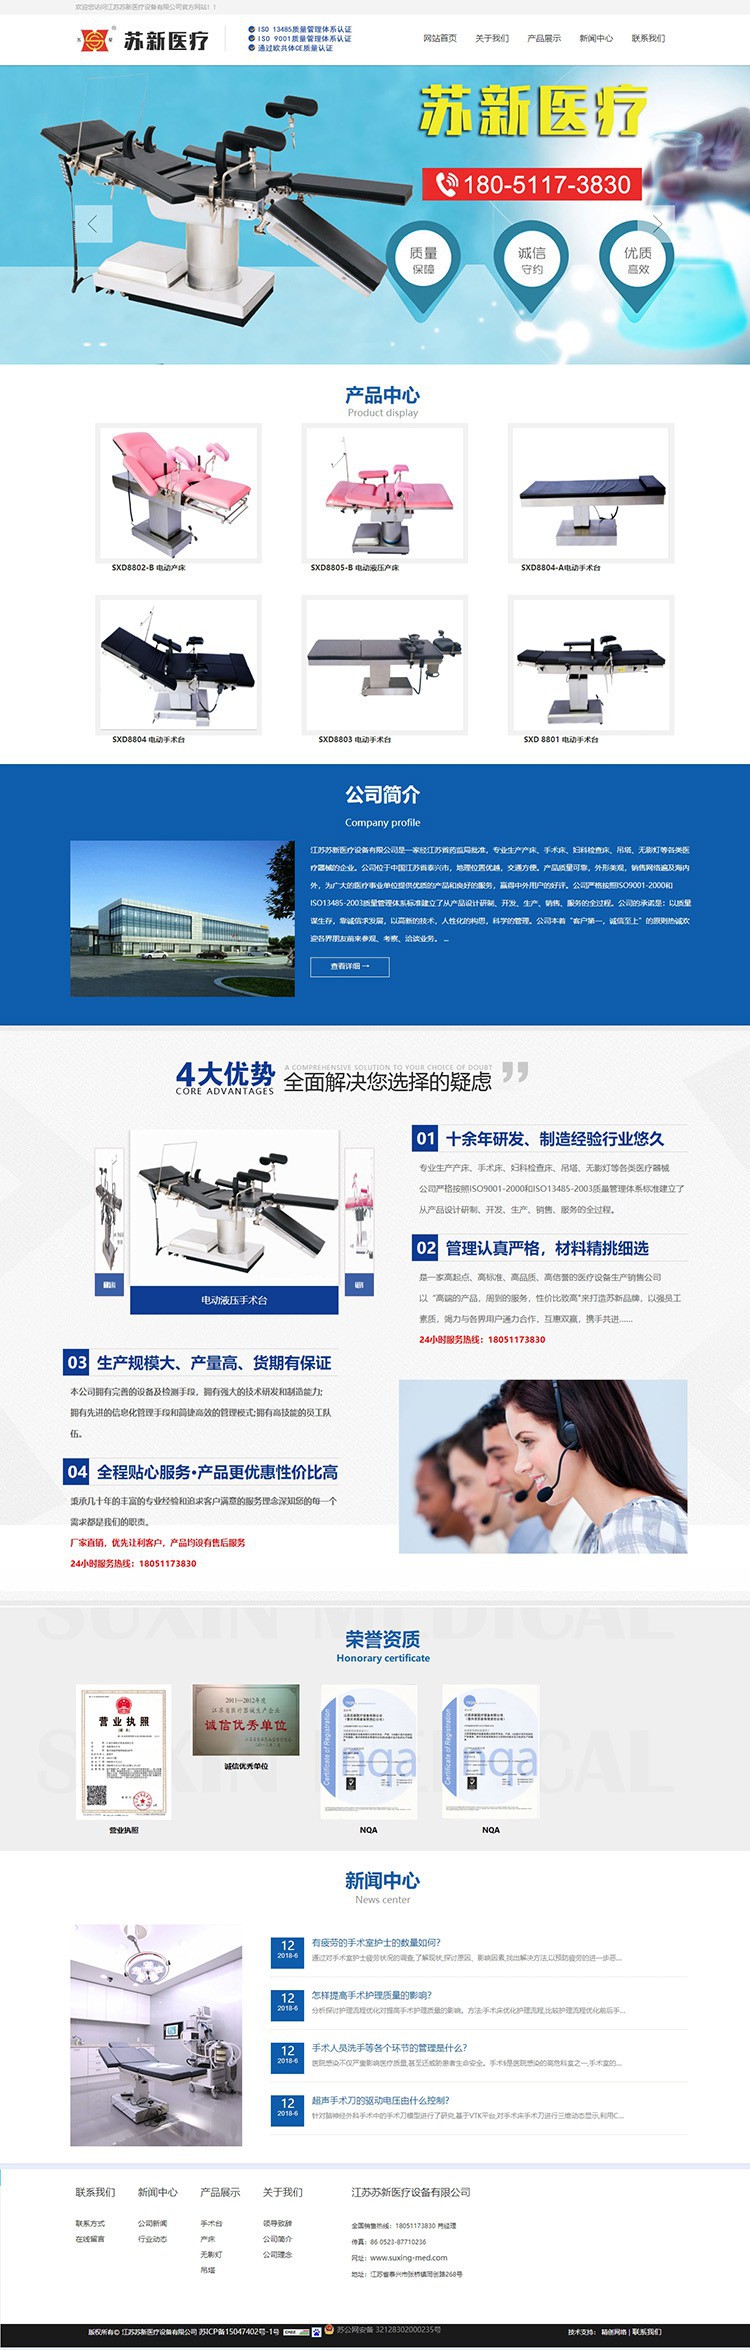 江苏苏新医疗设备有限公司营销型网站案例